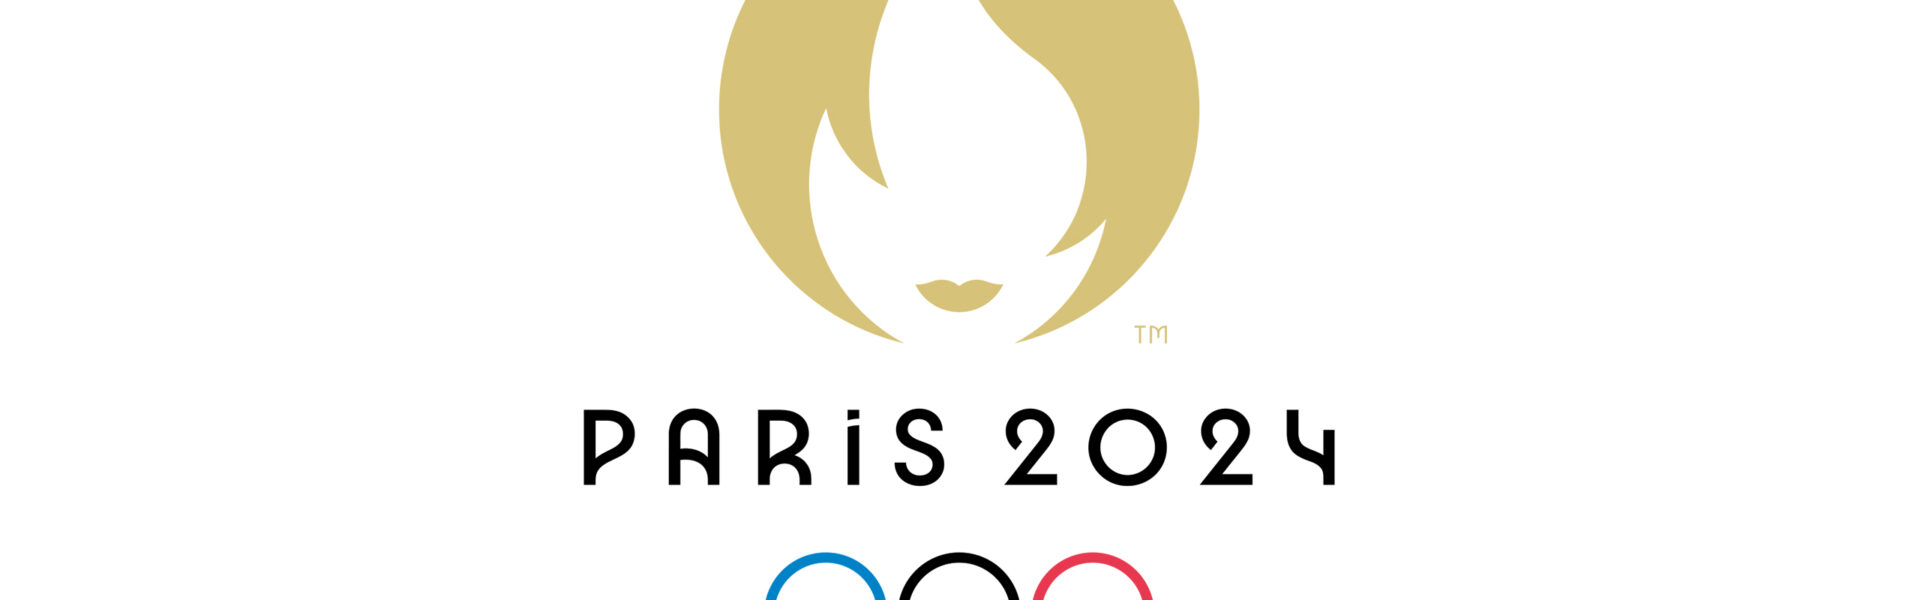 Lets go to the JO !!- Paris 2024